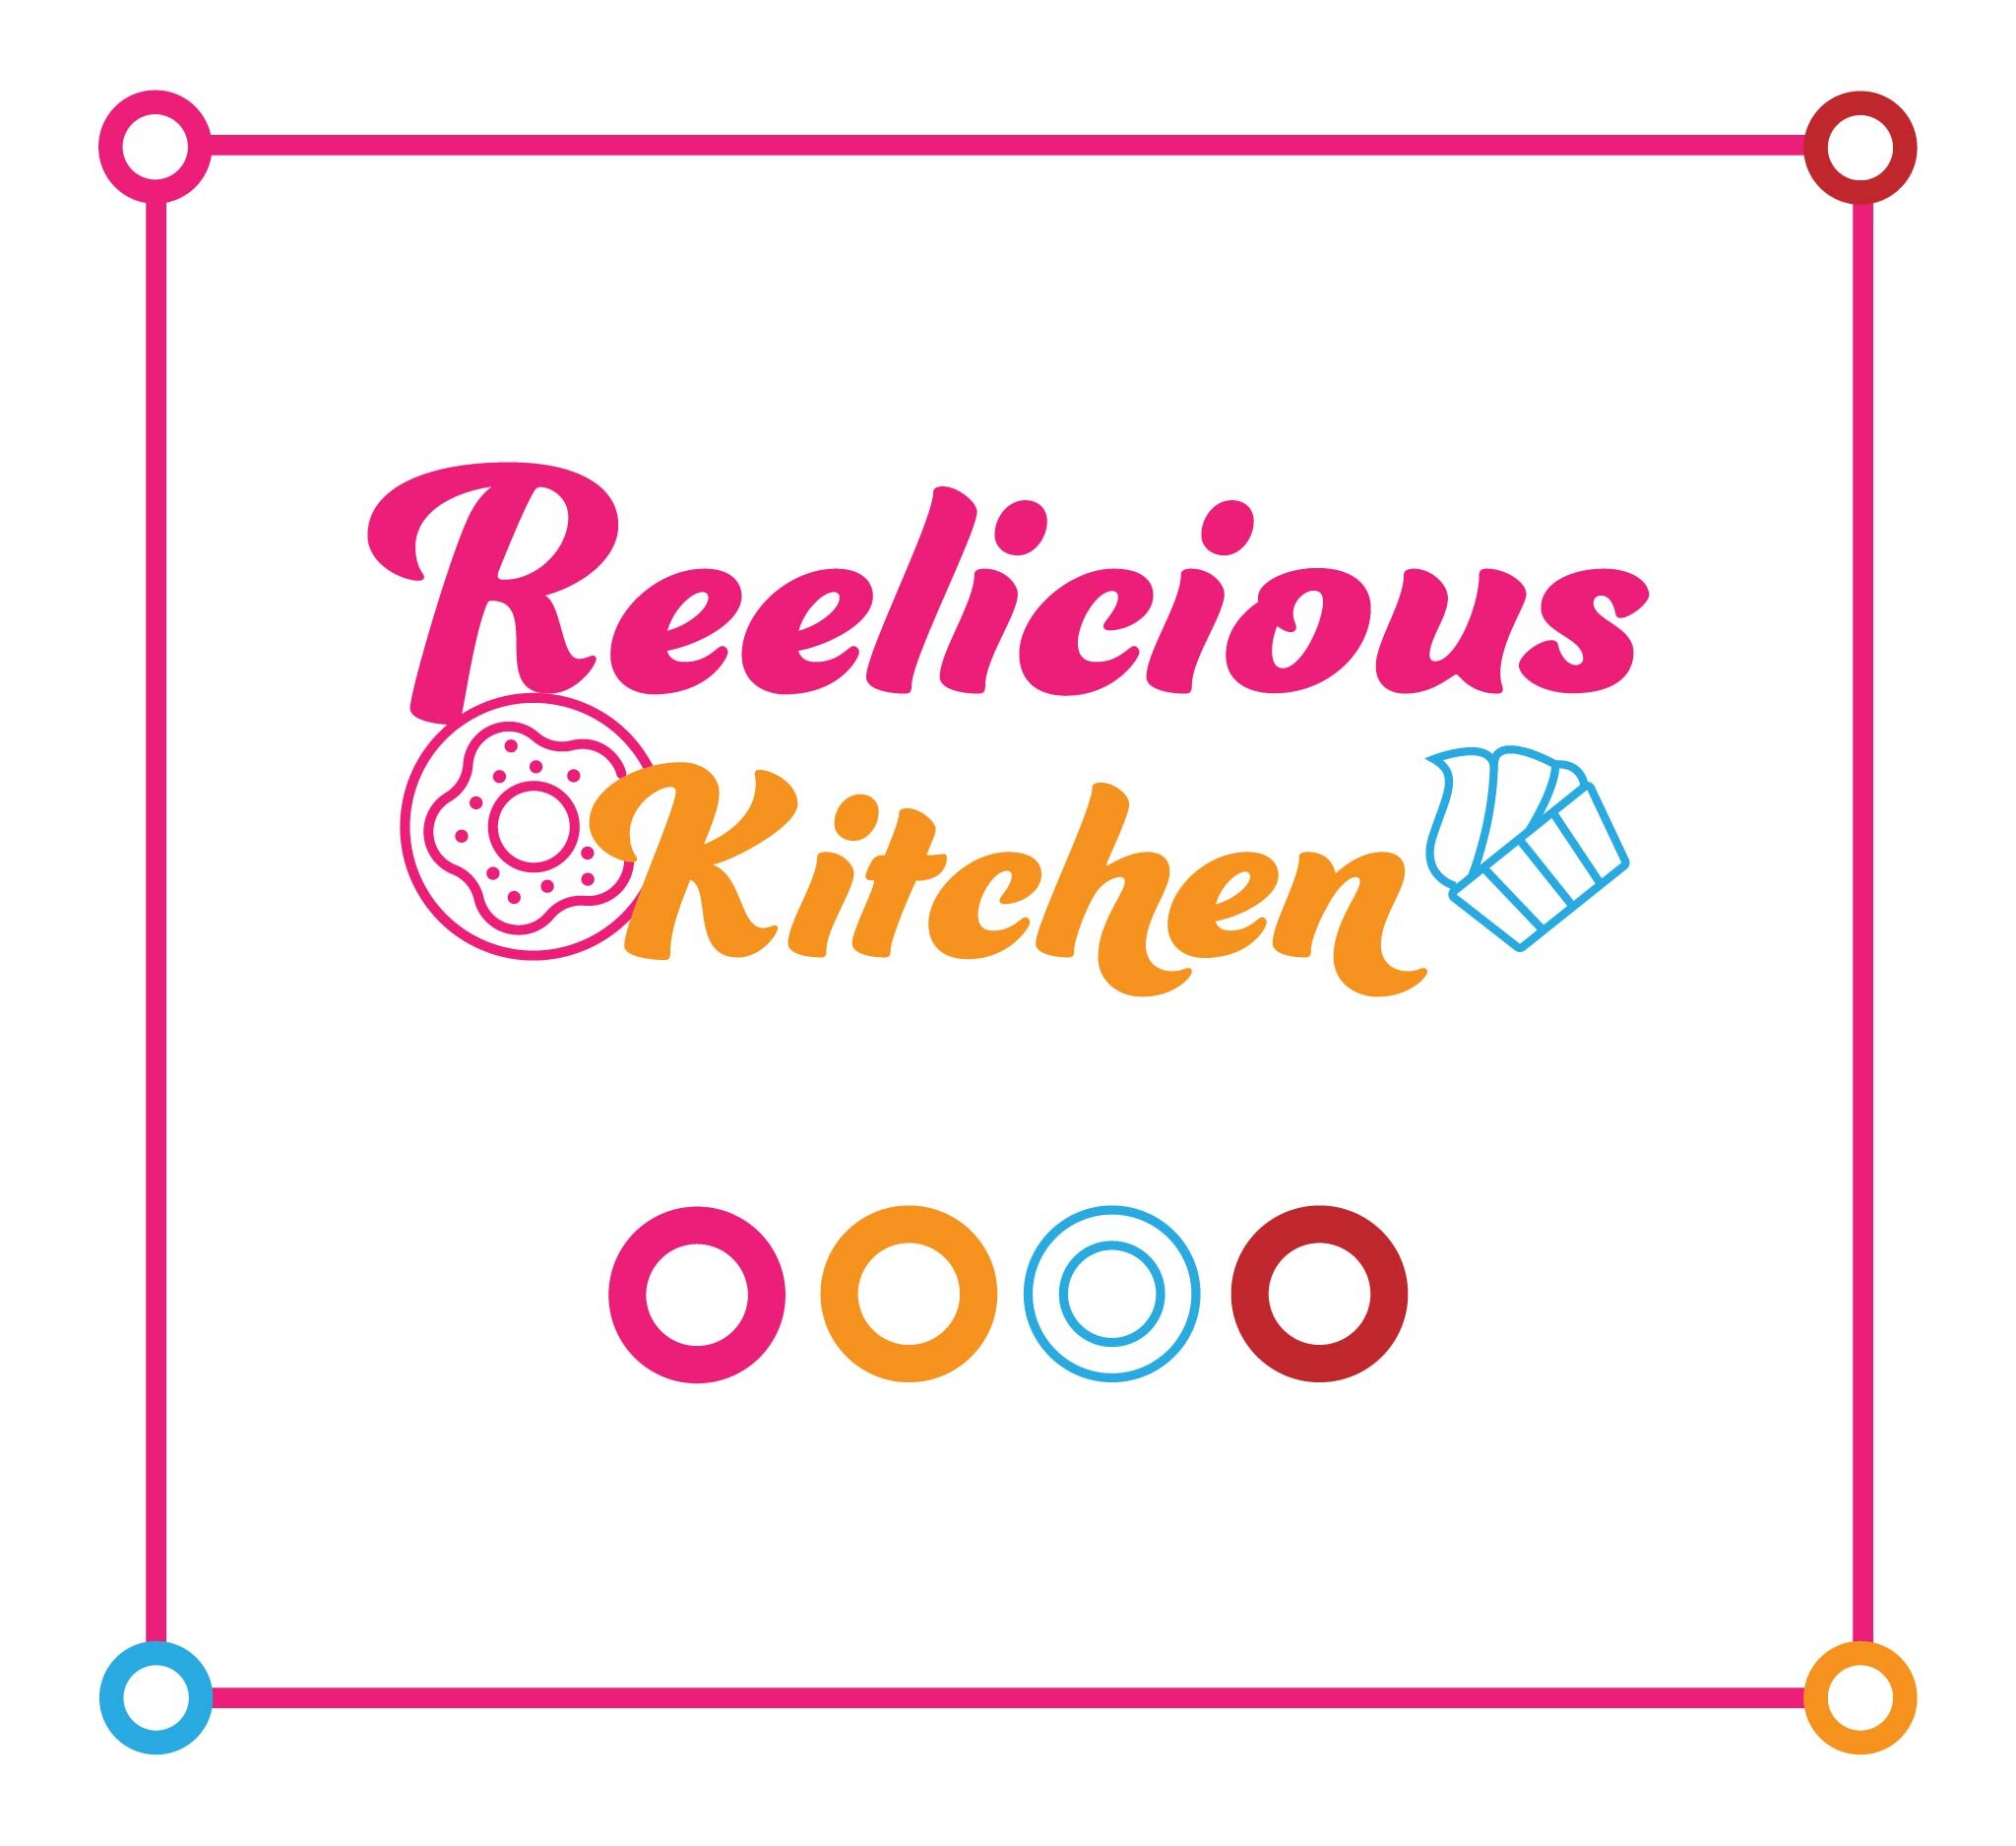 Reelicious-Kitchen_swatch- copy.jpg